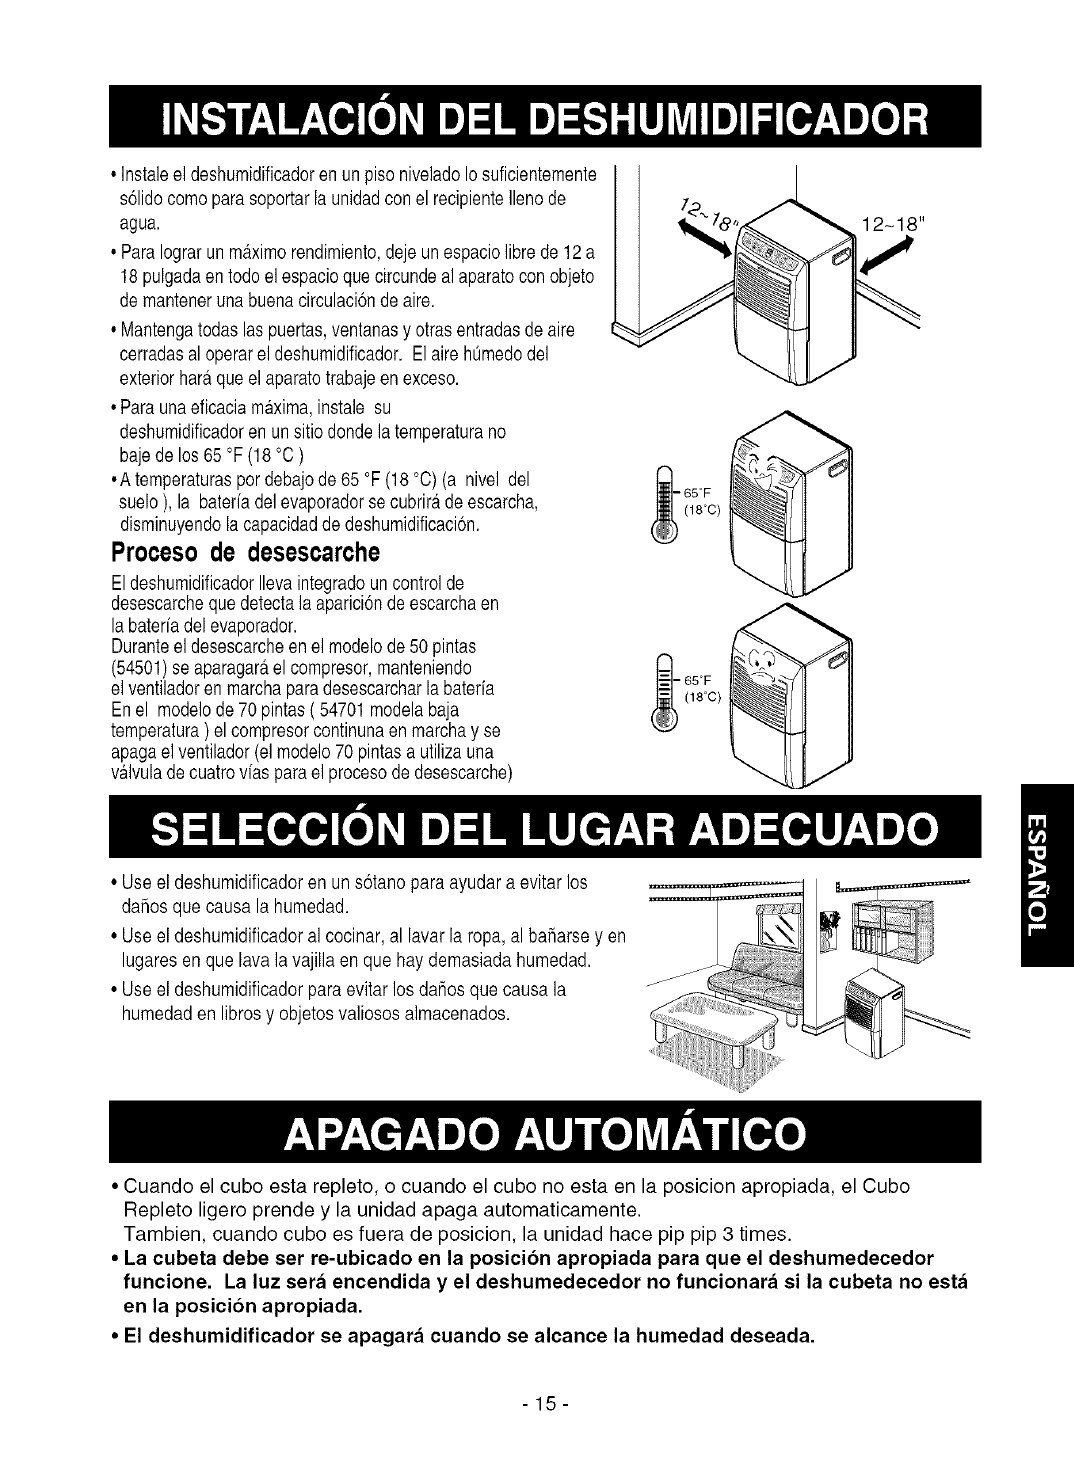 Manual de instrucciones del deshumidificador industrial SEALEY